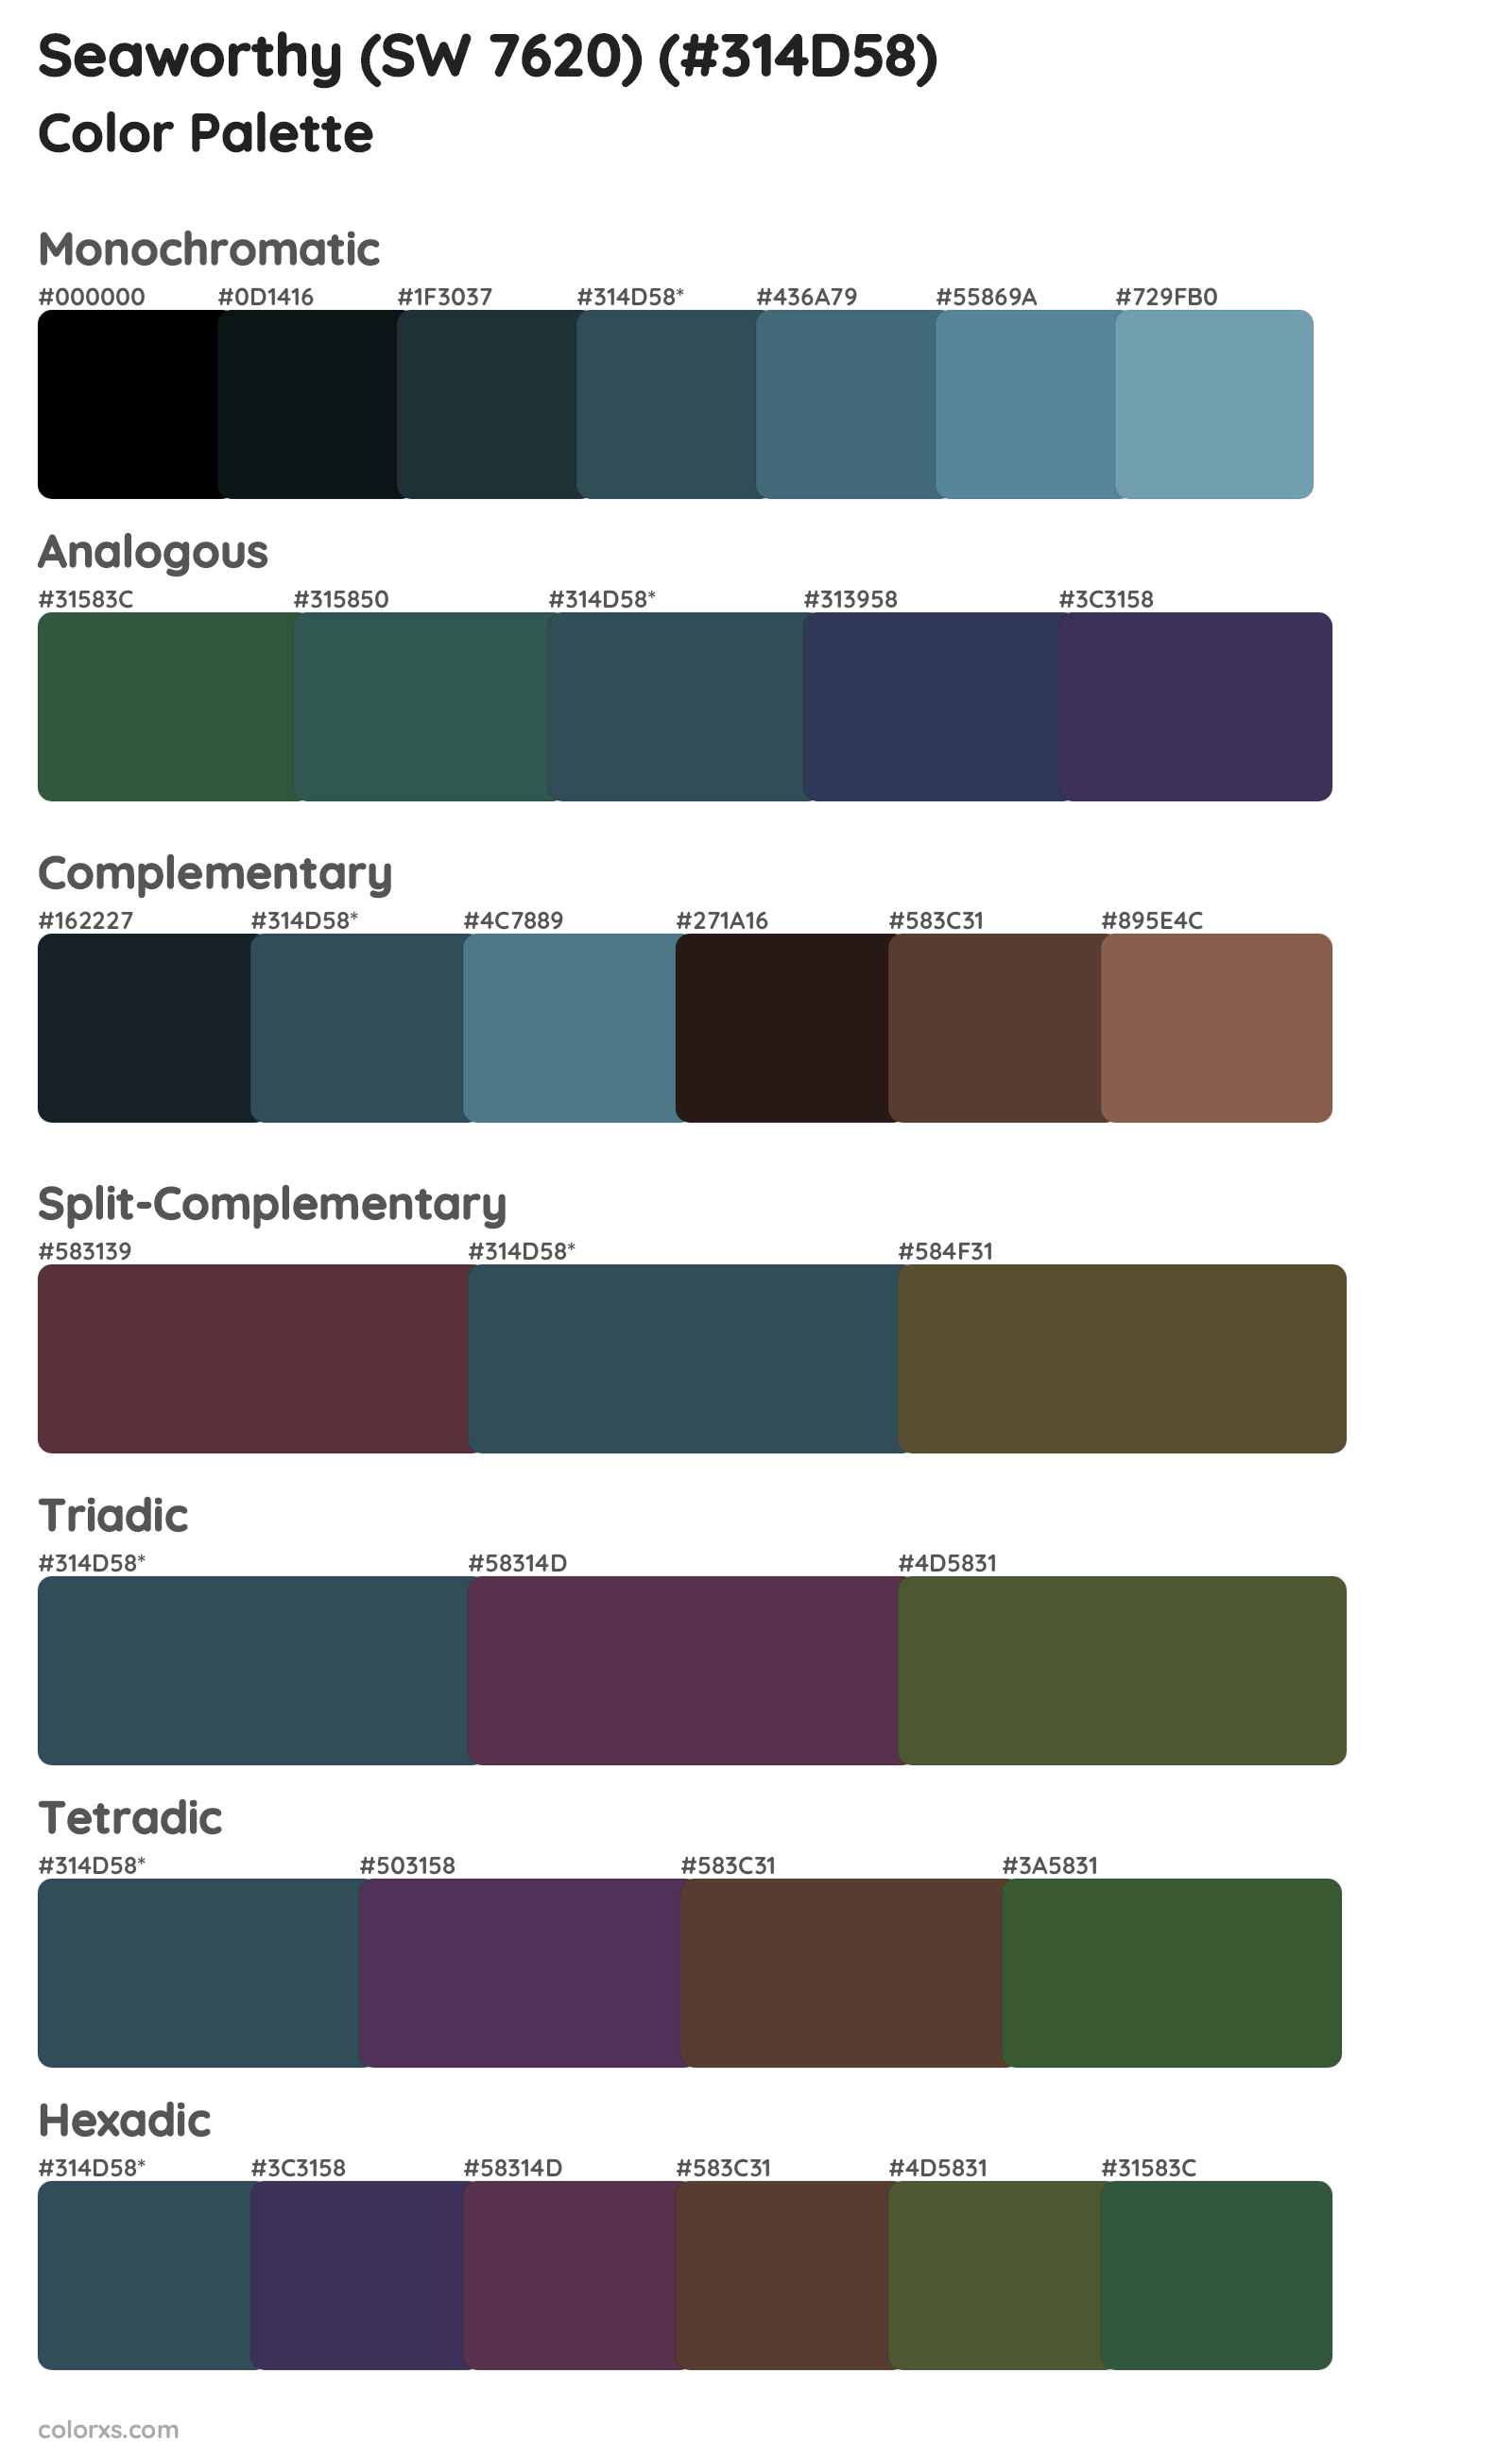 Seaworthy (SW 7620) Color Scheme Palettes